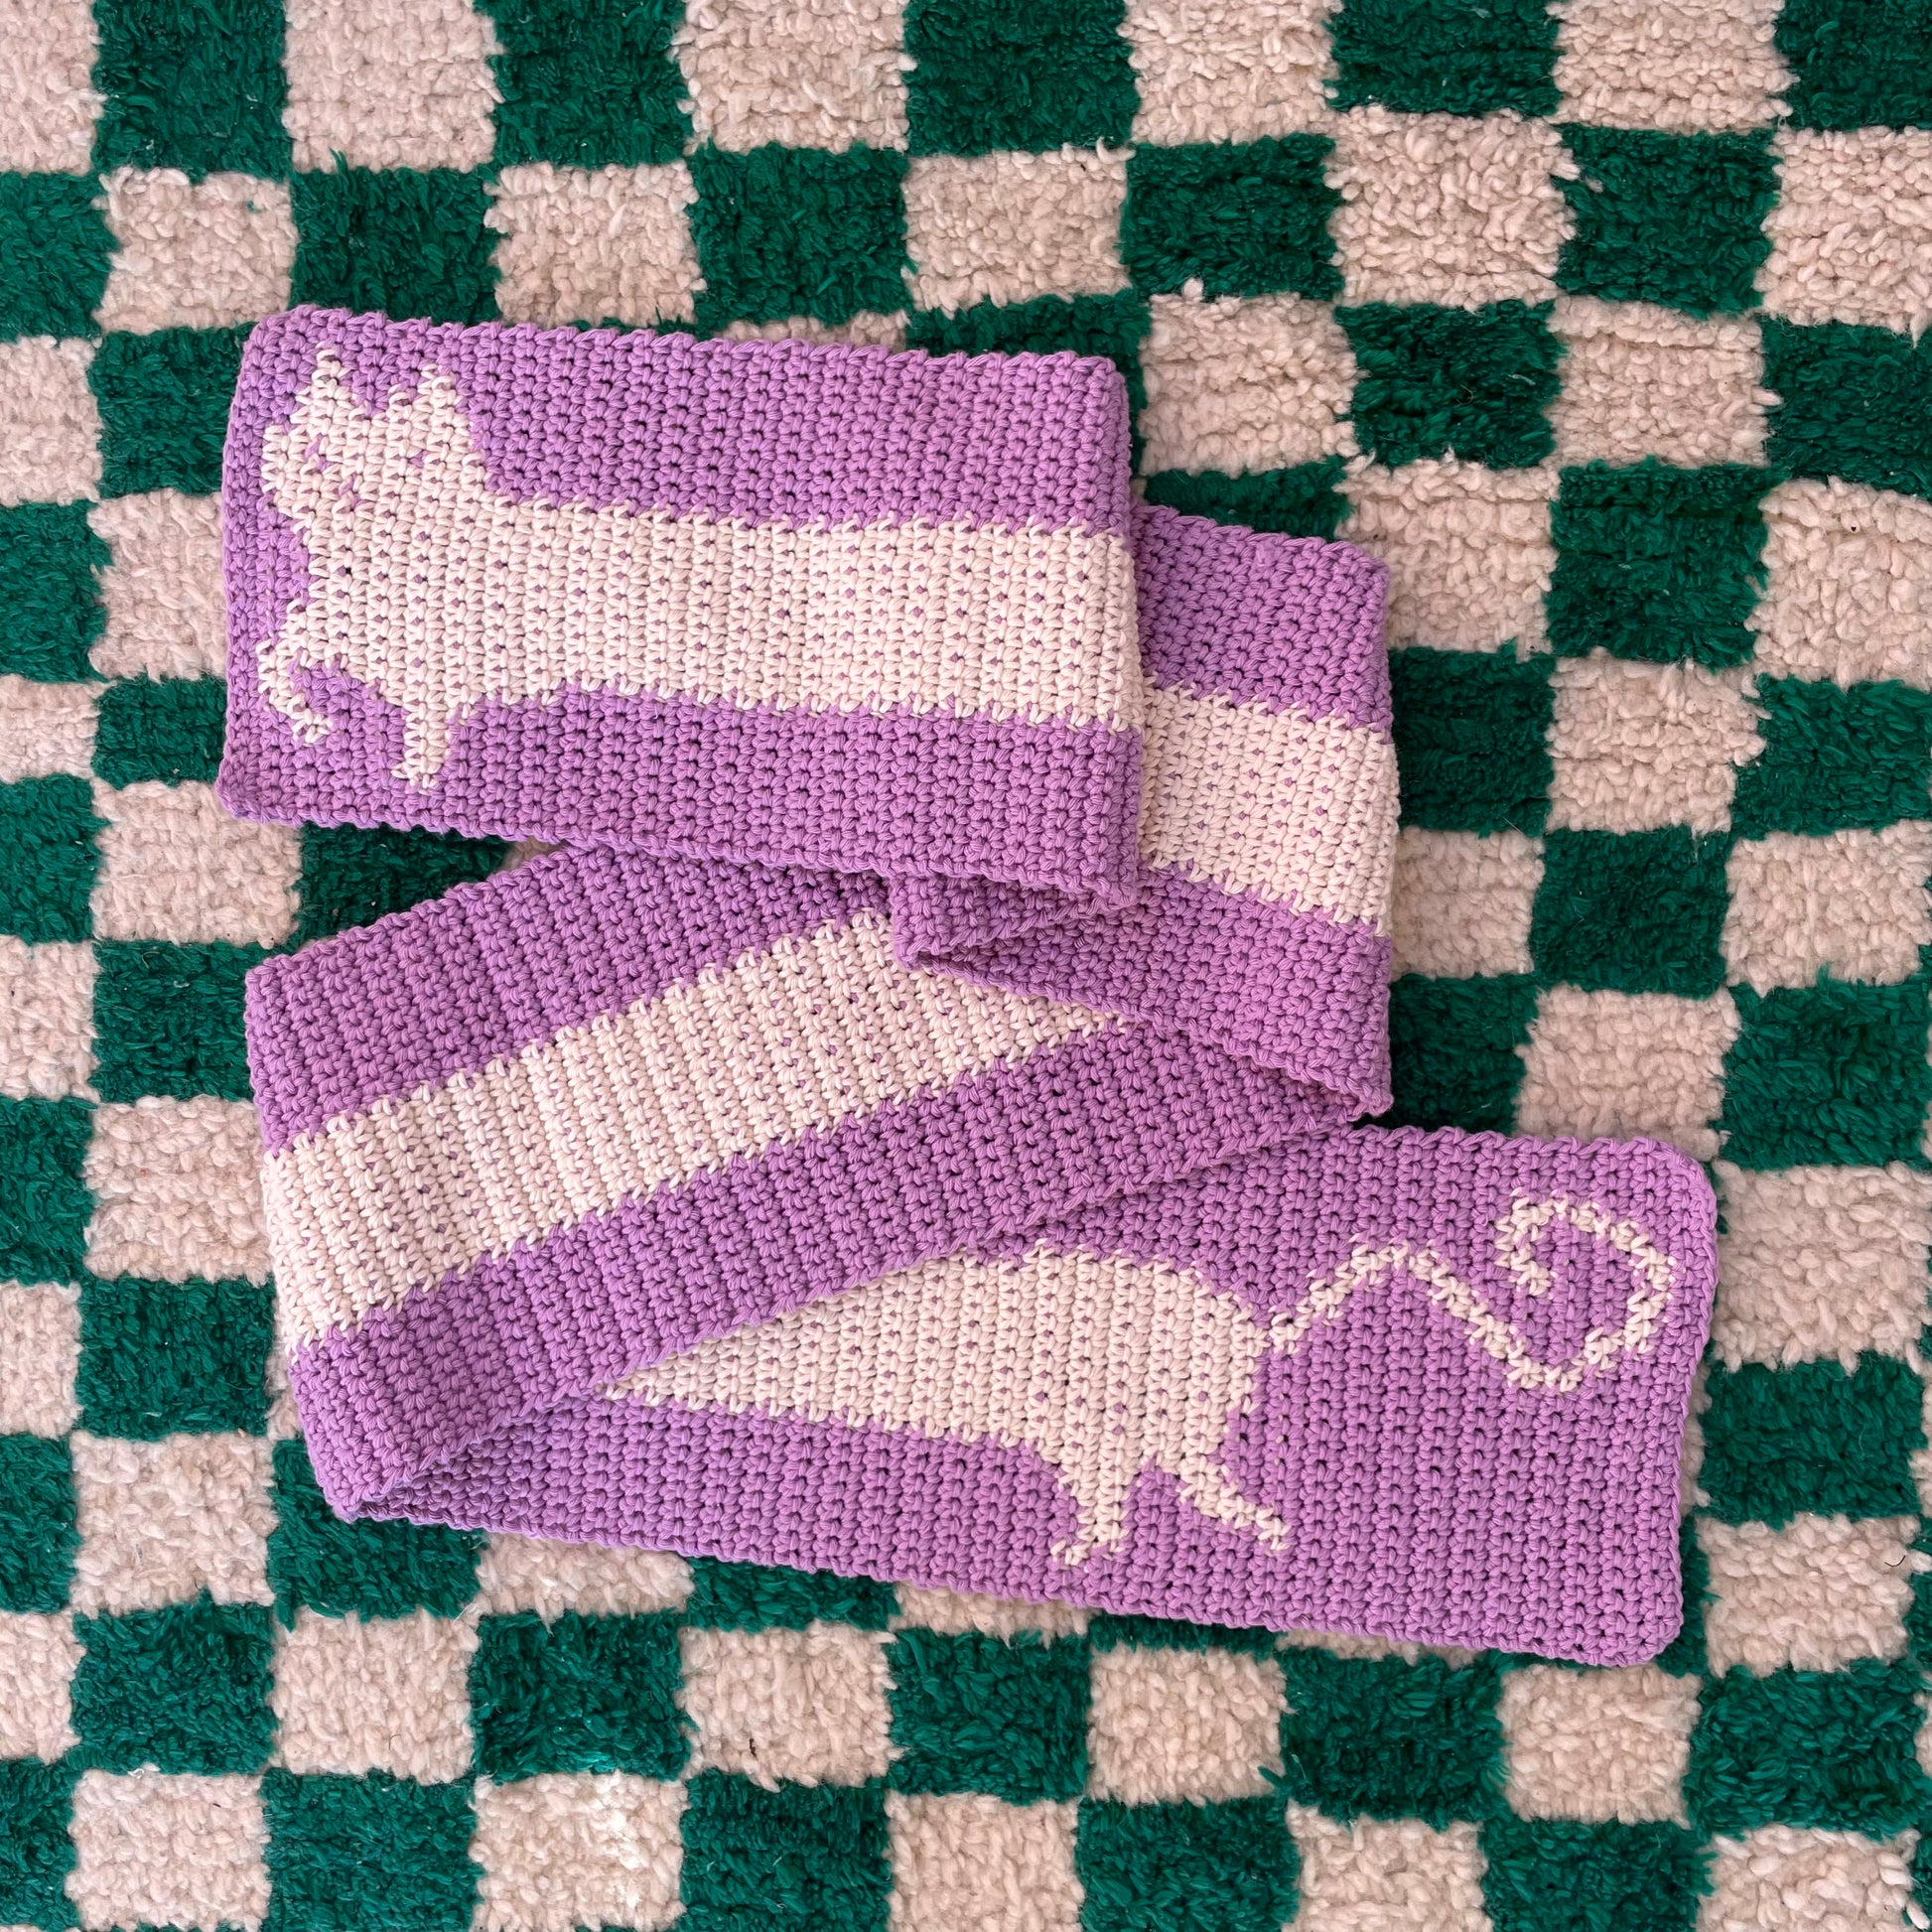 Crochet scarf pattern cat